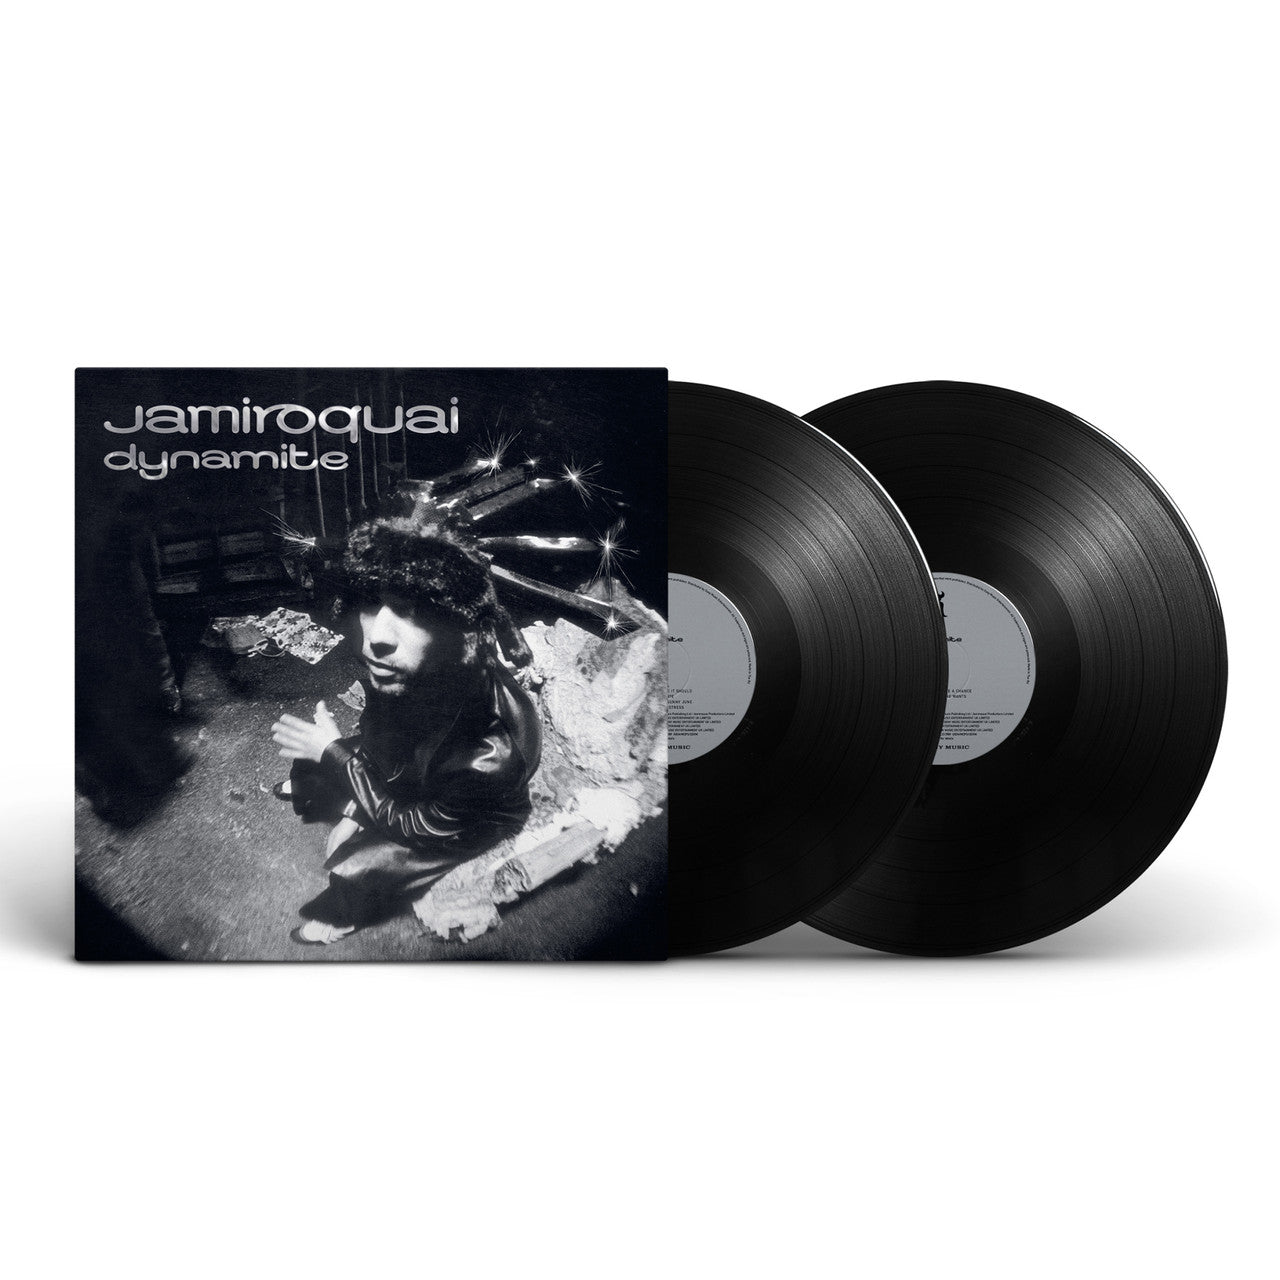 新品未開封 Jamiroquai レコード 2点セット ジャミロクワイ LP-